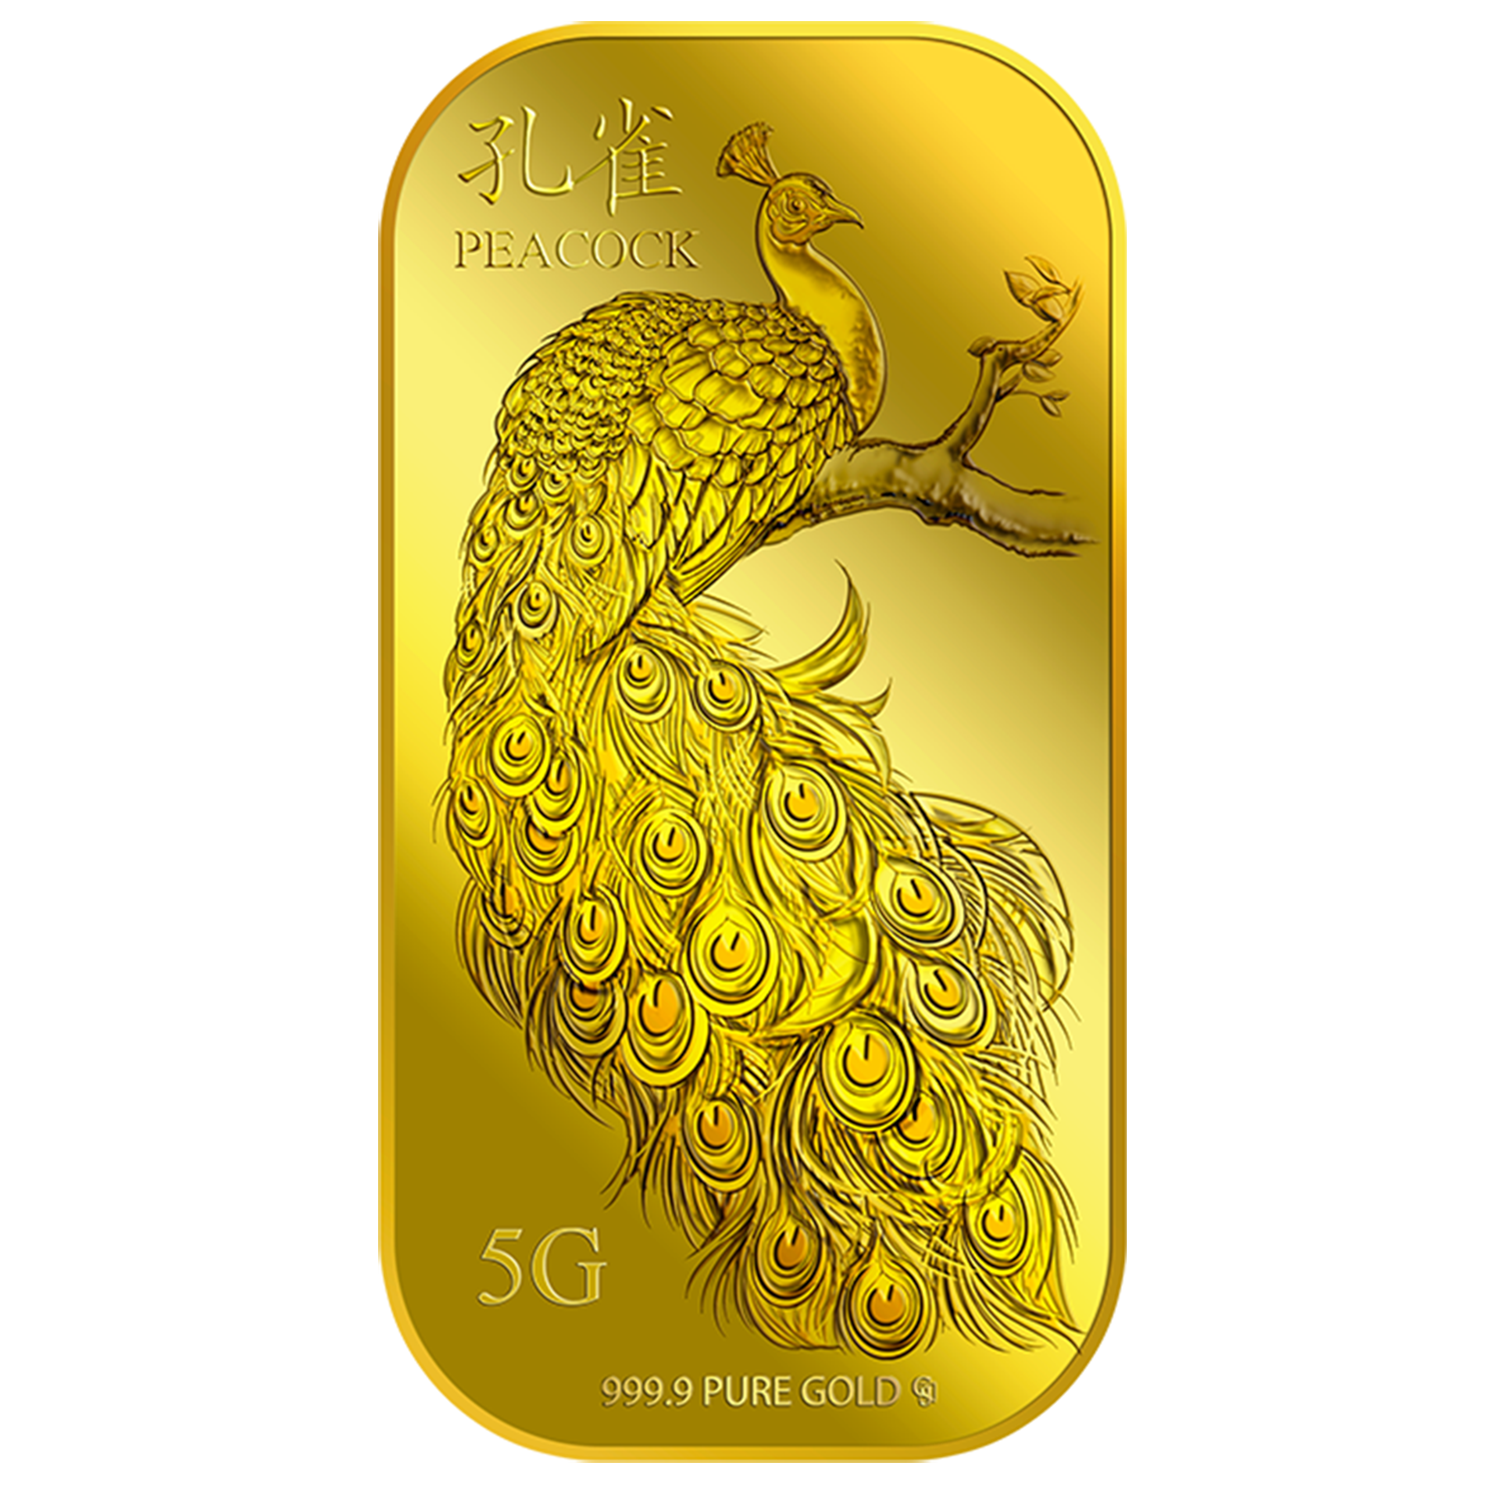 5g Golden Peacock Gold Bar